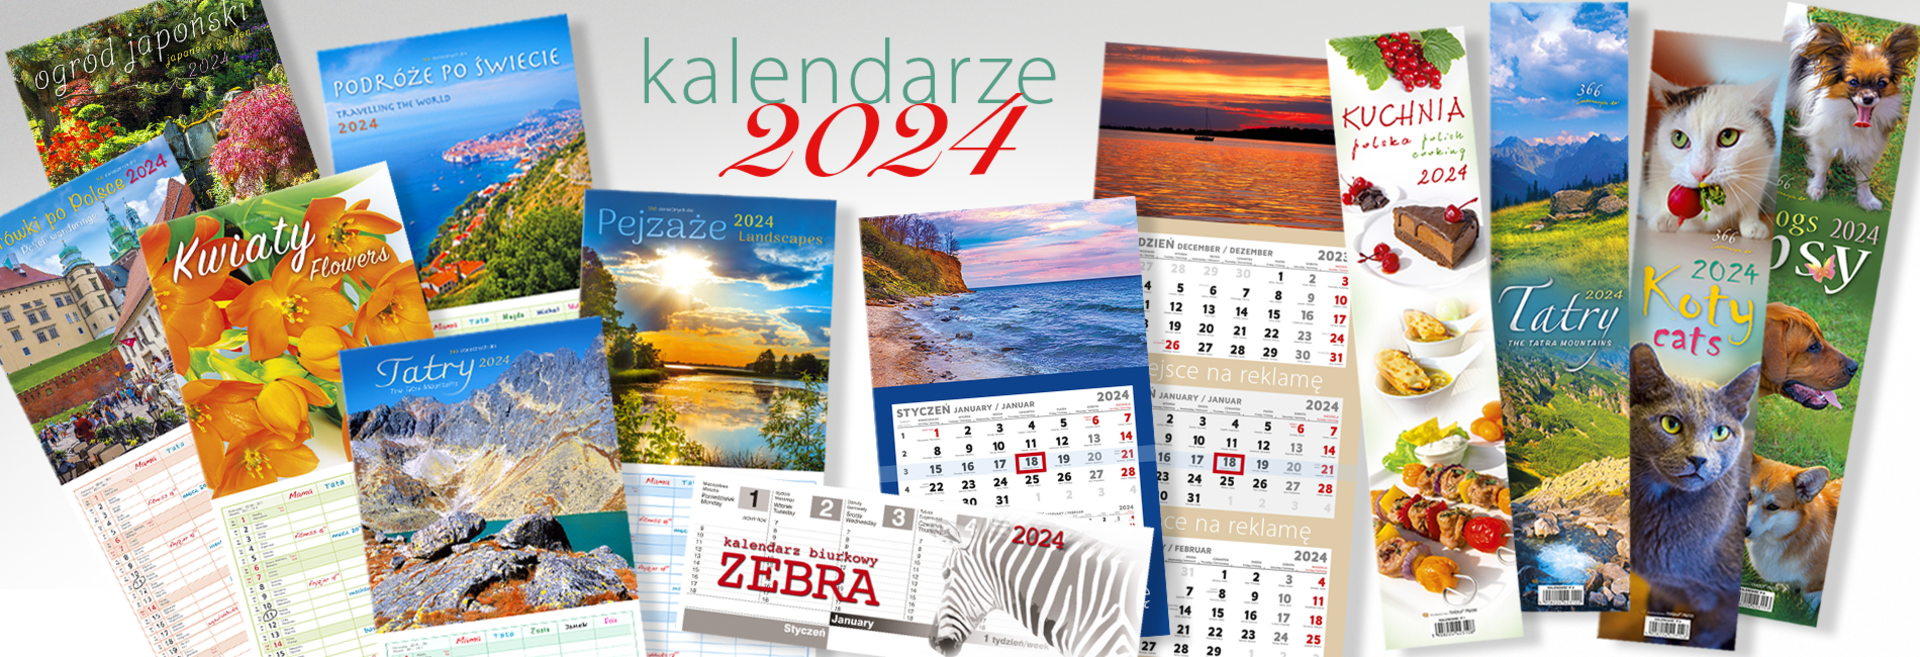 Kalendarze 2024